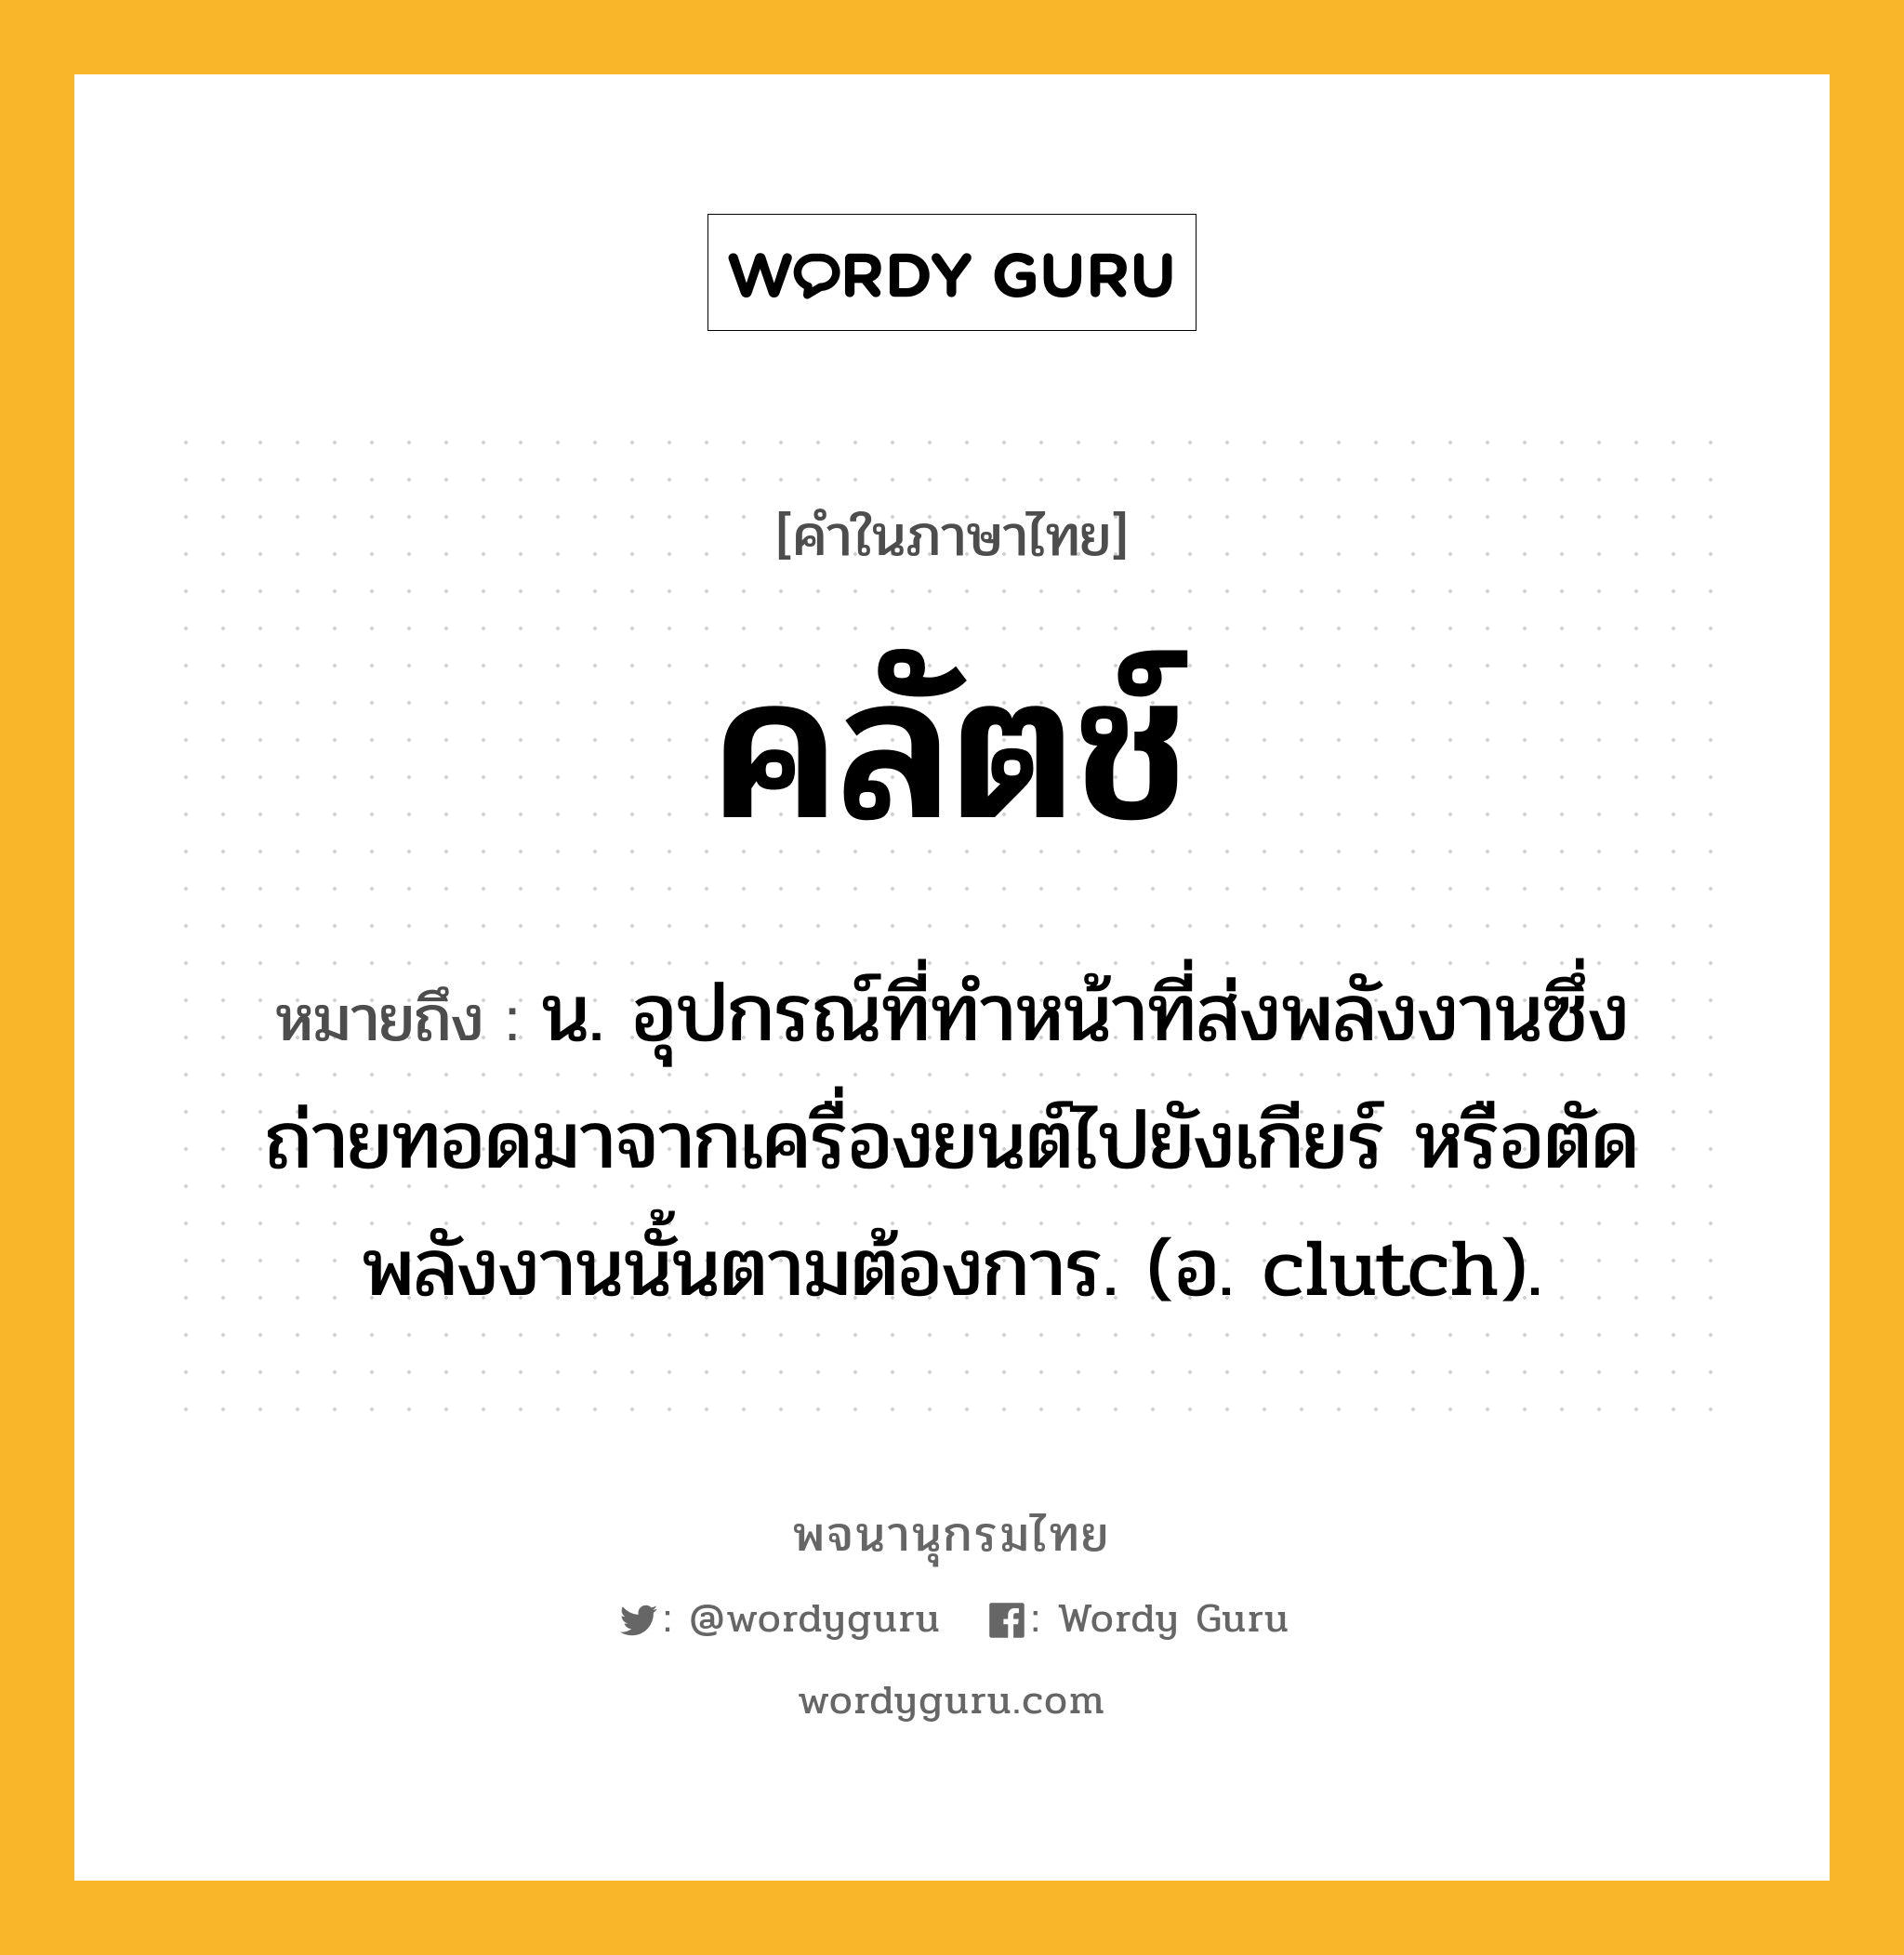 คลัตช์ ความหมาย หมายถึงอะไร?, คำในภาษาไทย คลัตช์ หมายถึง น. อุปกรณ์ที่ทําหน้าที่ส่งพลังงานซึ่งถ่ายทอดมาจากเครื่องยนต์ไปยังเกียร์ หรือตัดพลังงานนั้นตามต้องการ. (อ. clutch).